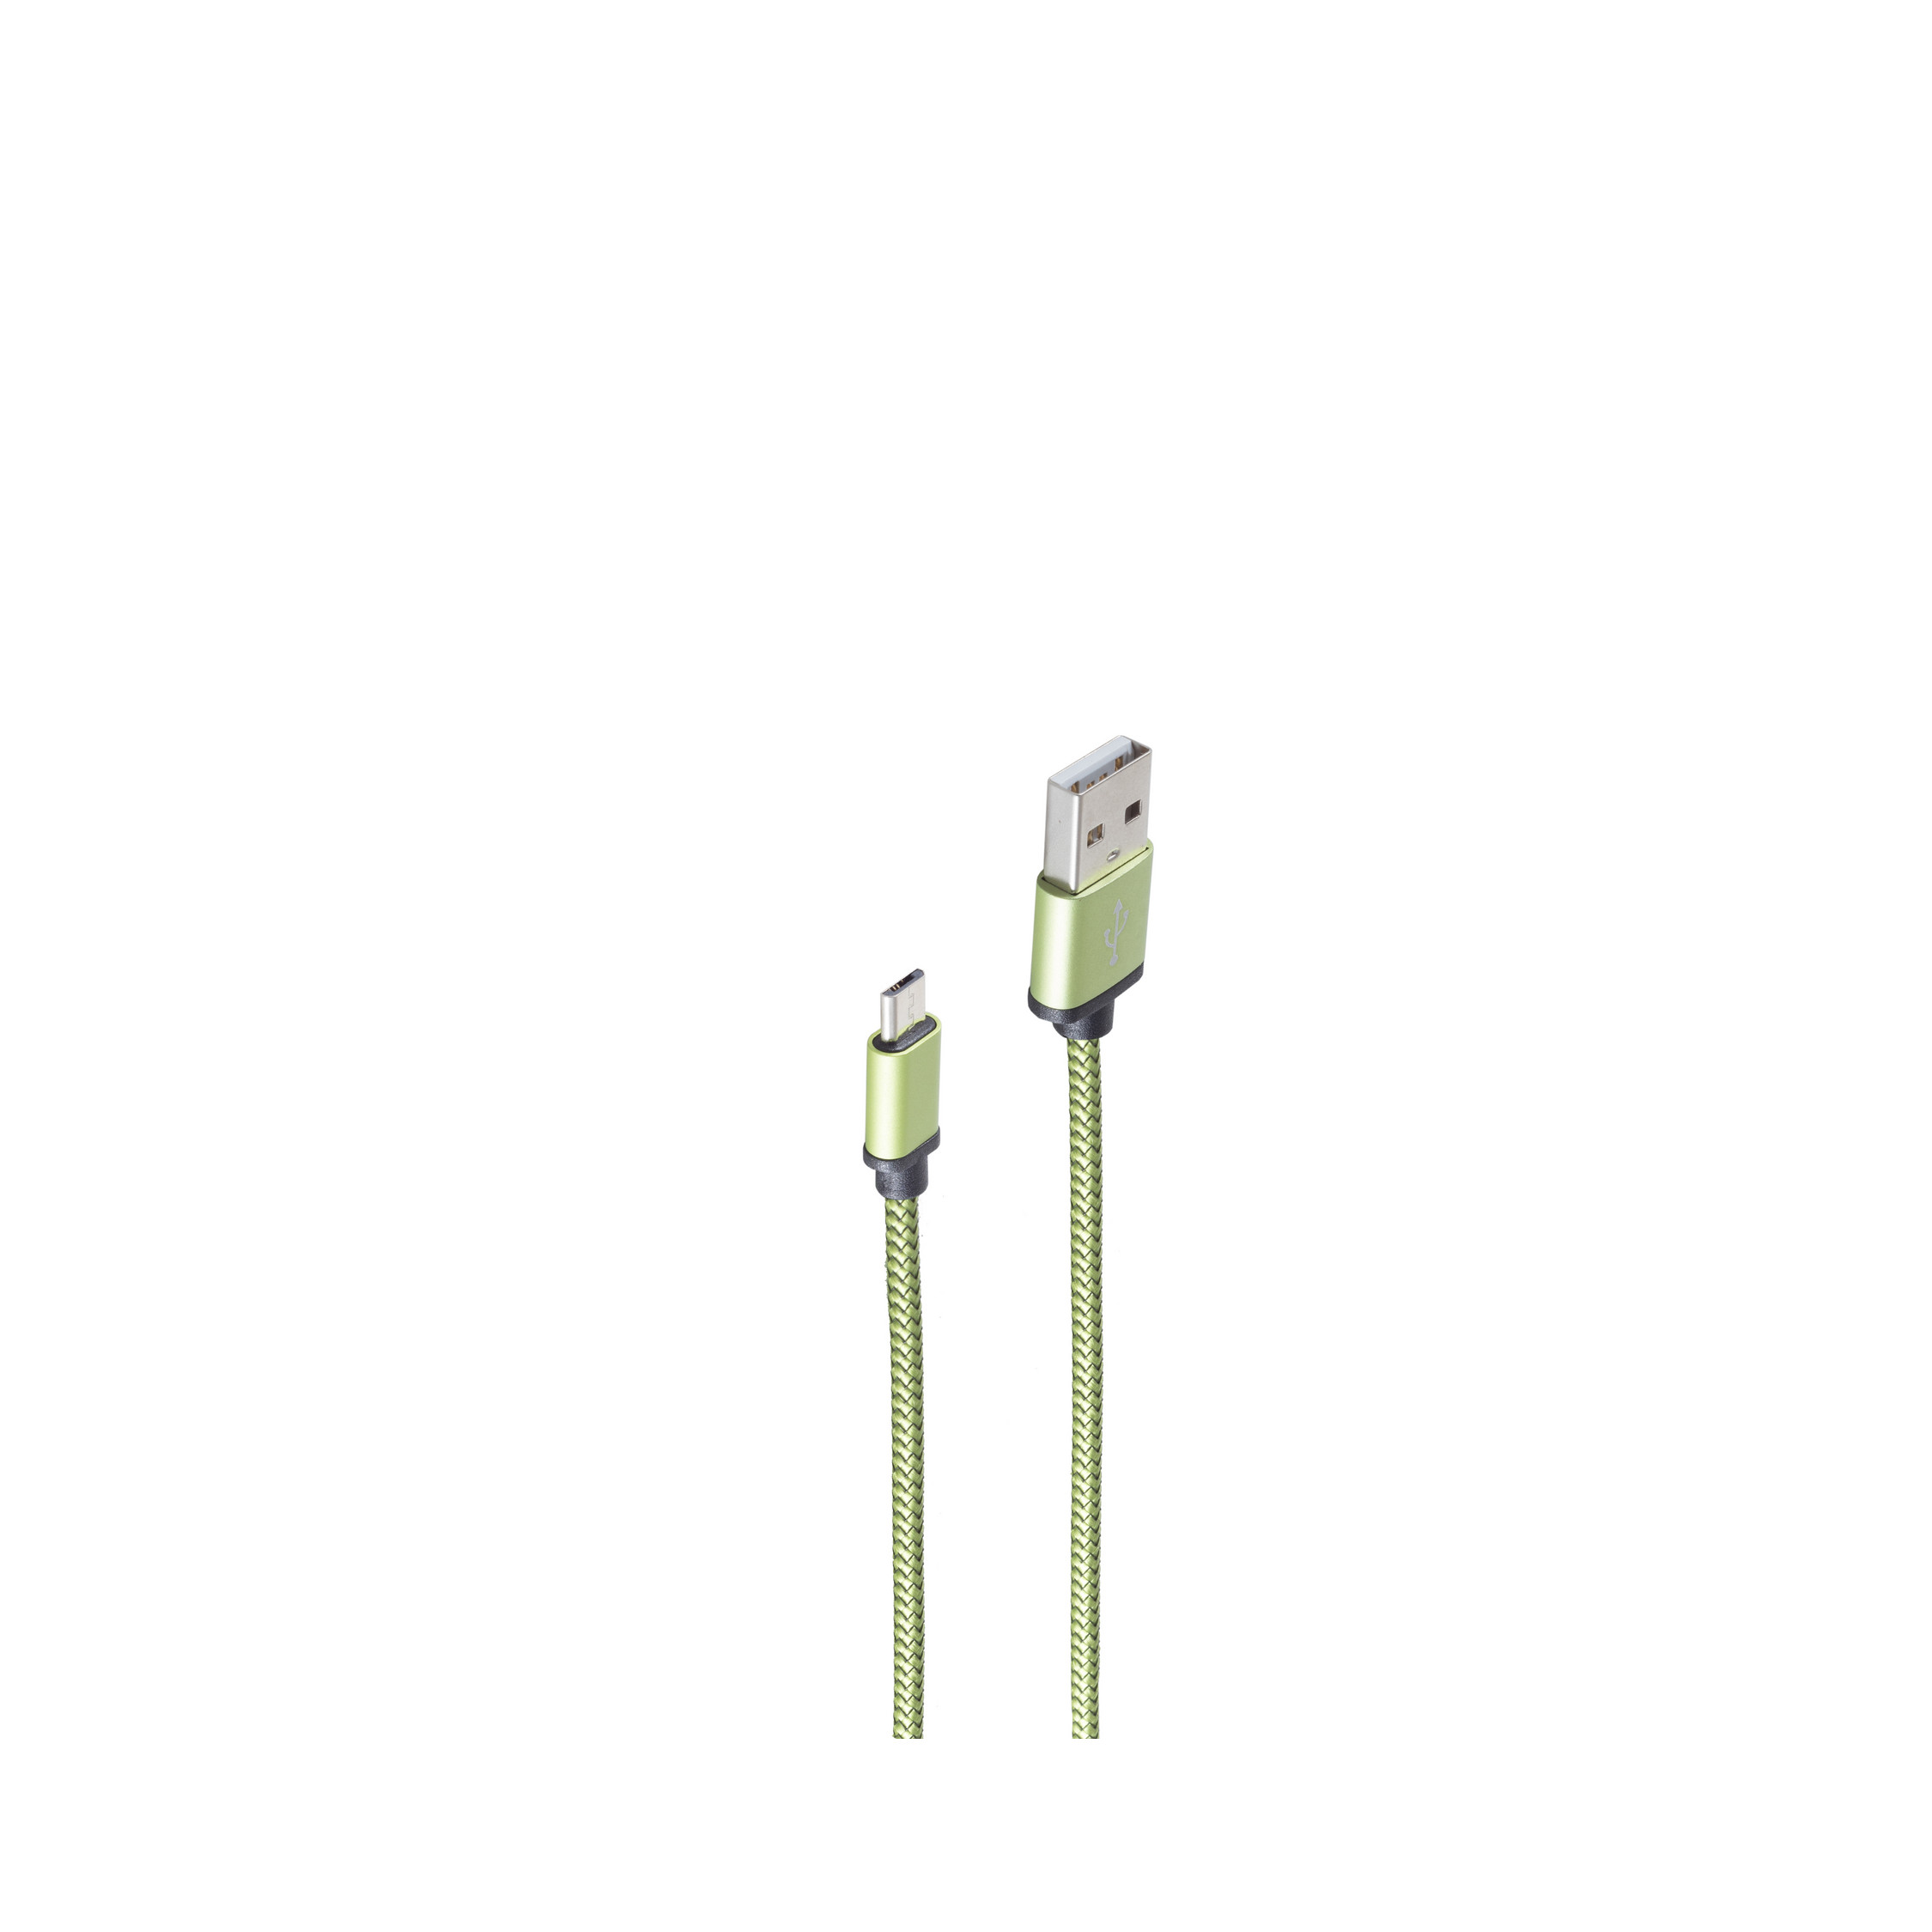 SHIVERPEAKS USB-Ladekabel aqua A 0,9 B Micro auf Stecker Ladekabel, 0,9m, grün, USB m, USB